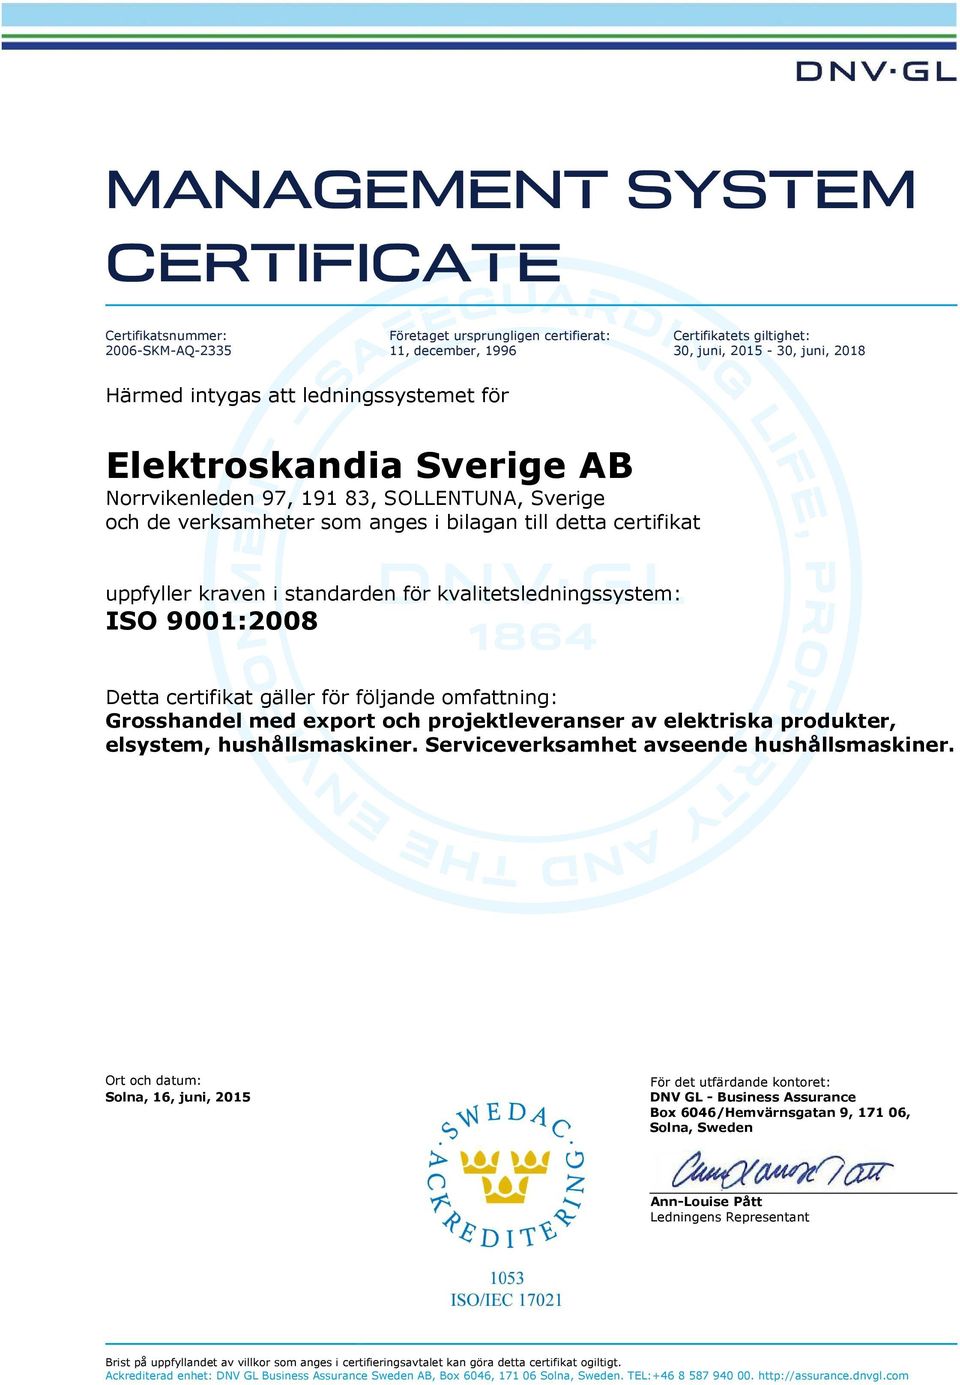 ISO 9001:2008 Detta certifikat gäller för följande omfattning: produkter, elsystem, Ort och datum: Solna, 16, juni, 2015 För det utfärdande kontoret: DNV GL - Business Assurance Box